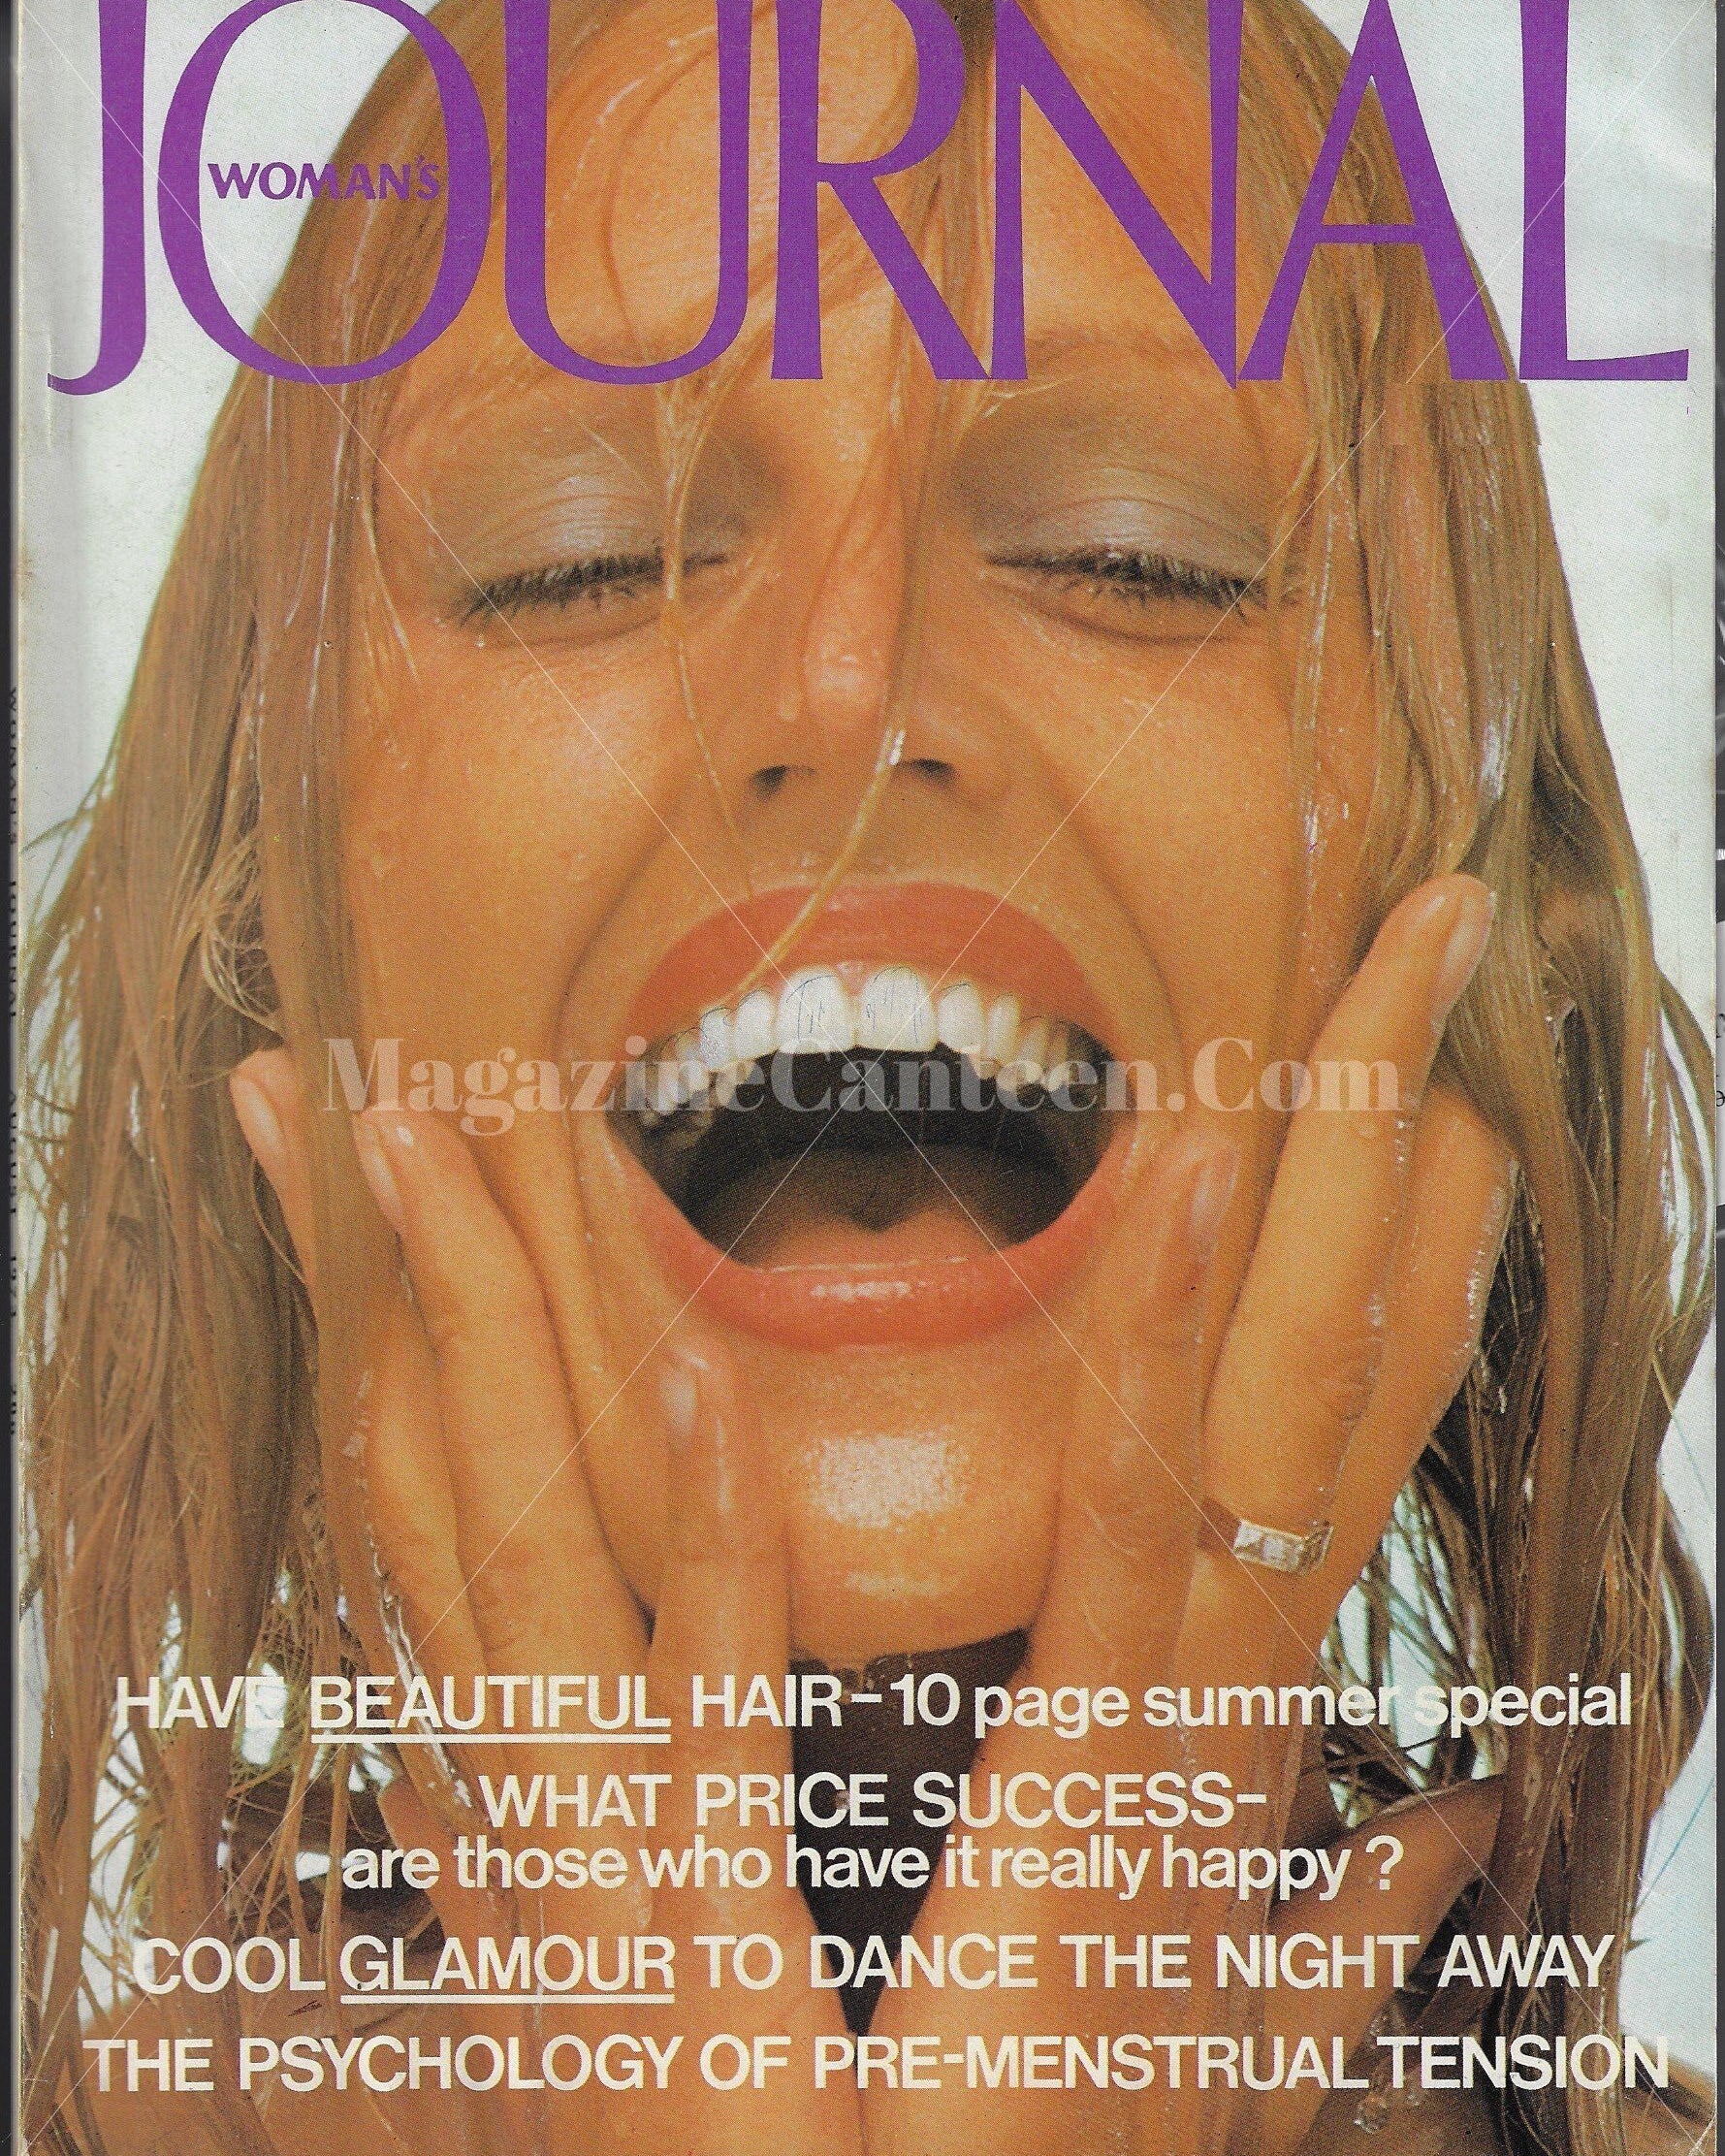 Woman's Journal Magazine - Judy Parfitt